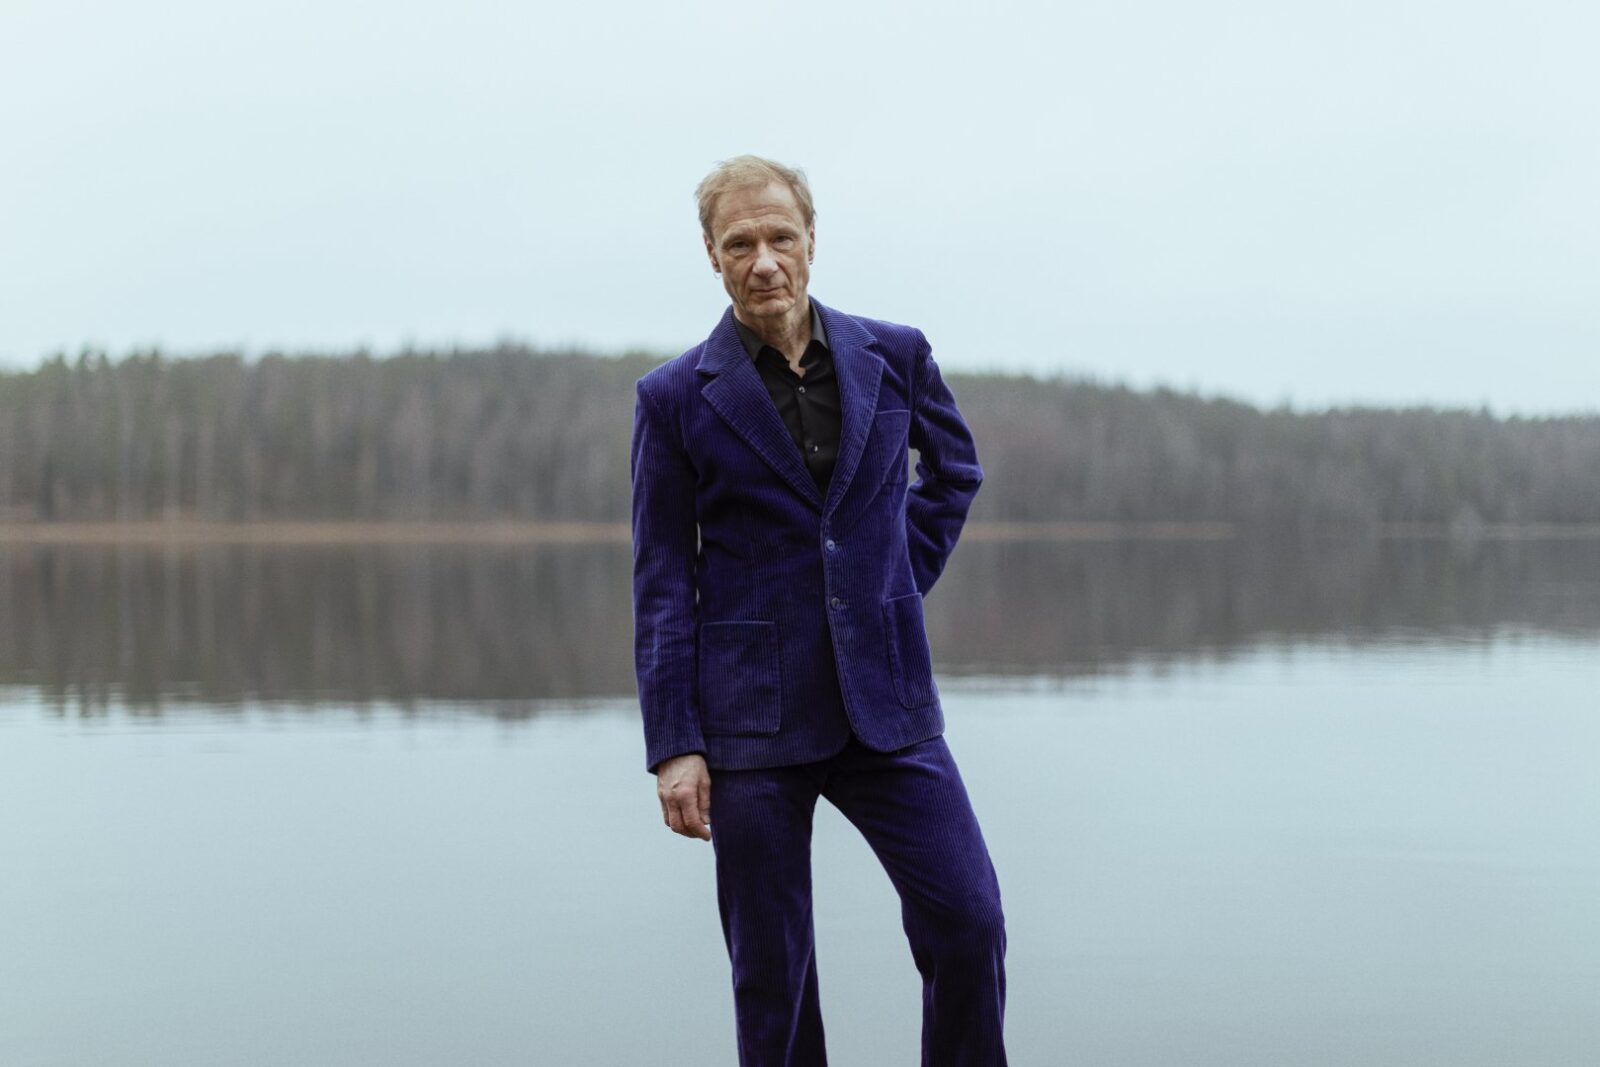 Laulaja Ismo Alanko seisoo tummanlila puku päällään harmaa saaristomaisema taustanaan.